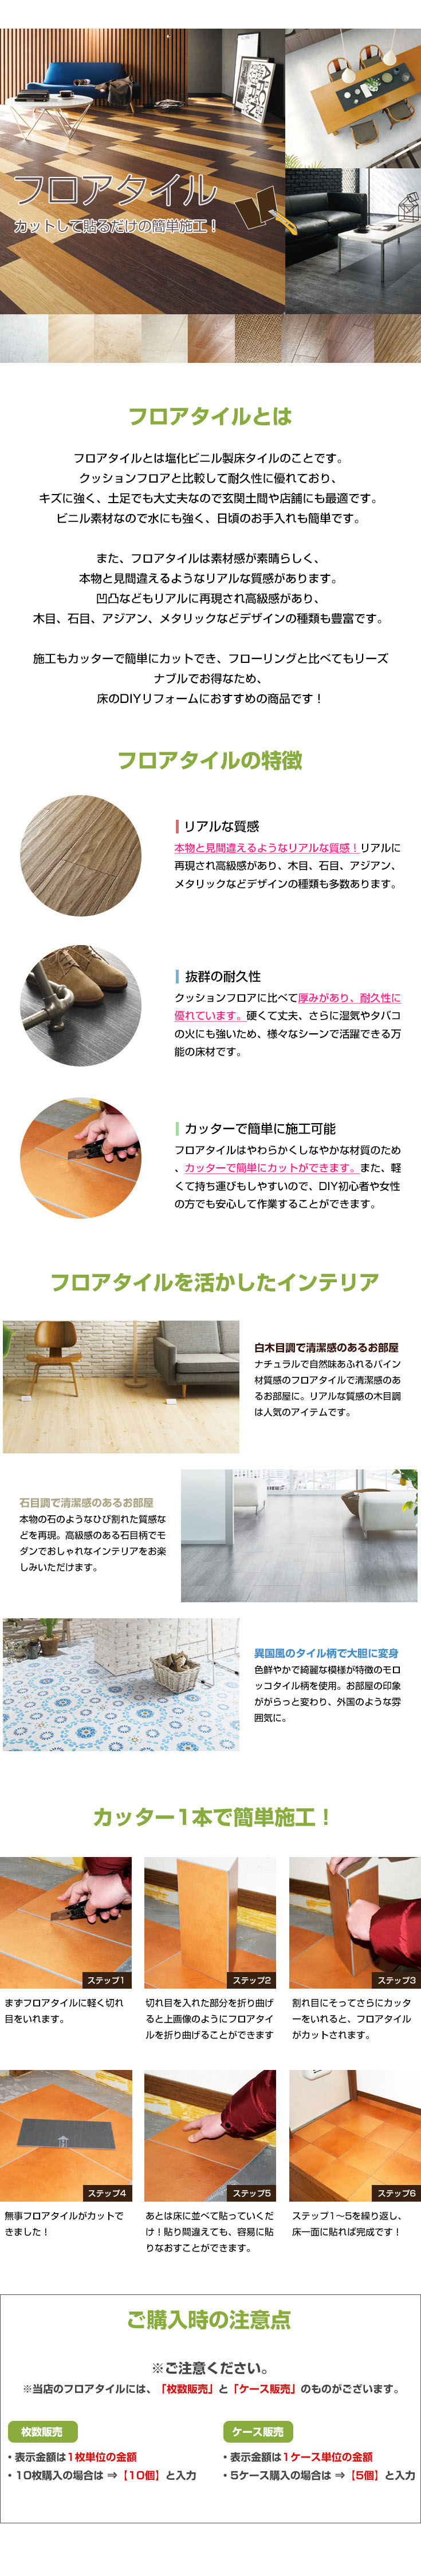 日本製 フロアタイル サンゲツ Is928 930 1枚販売 ストーン 壁紙diy ルームファクトリー